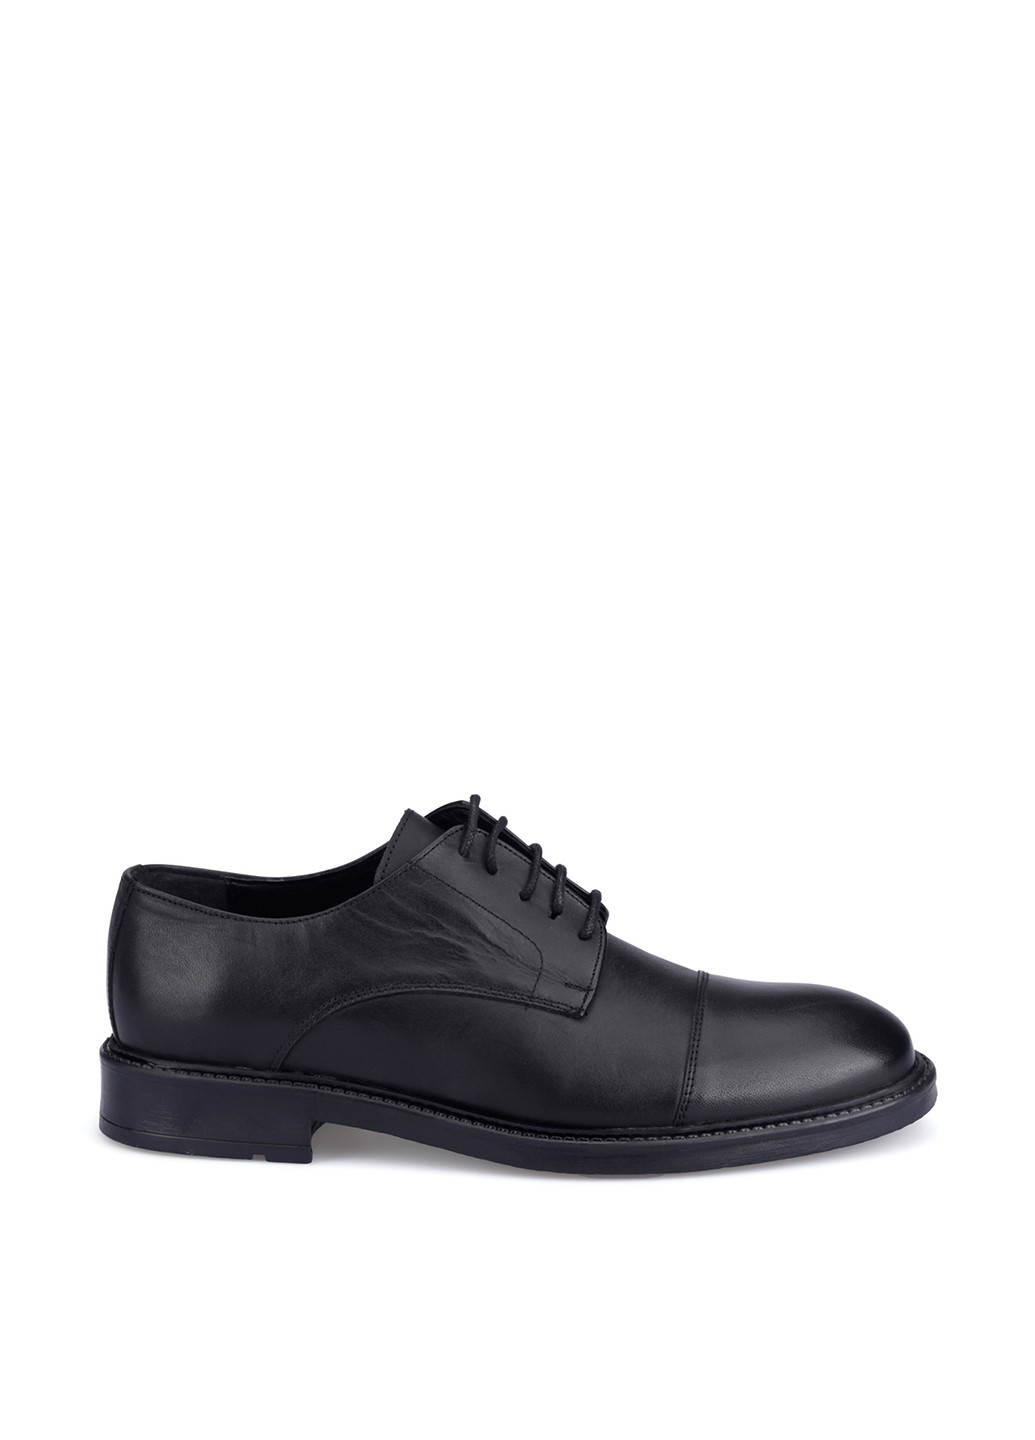 Черные классические туфли Garamond на шнурках